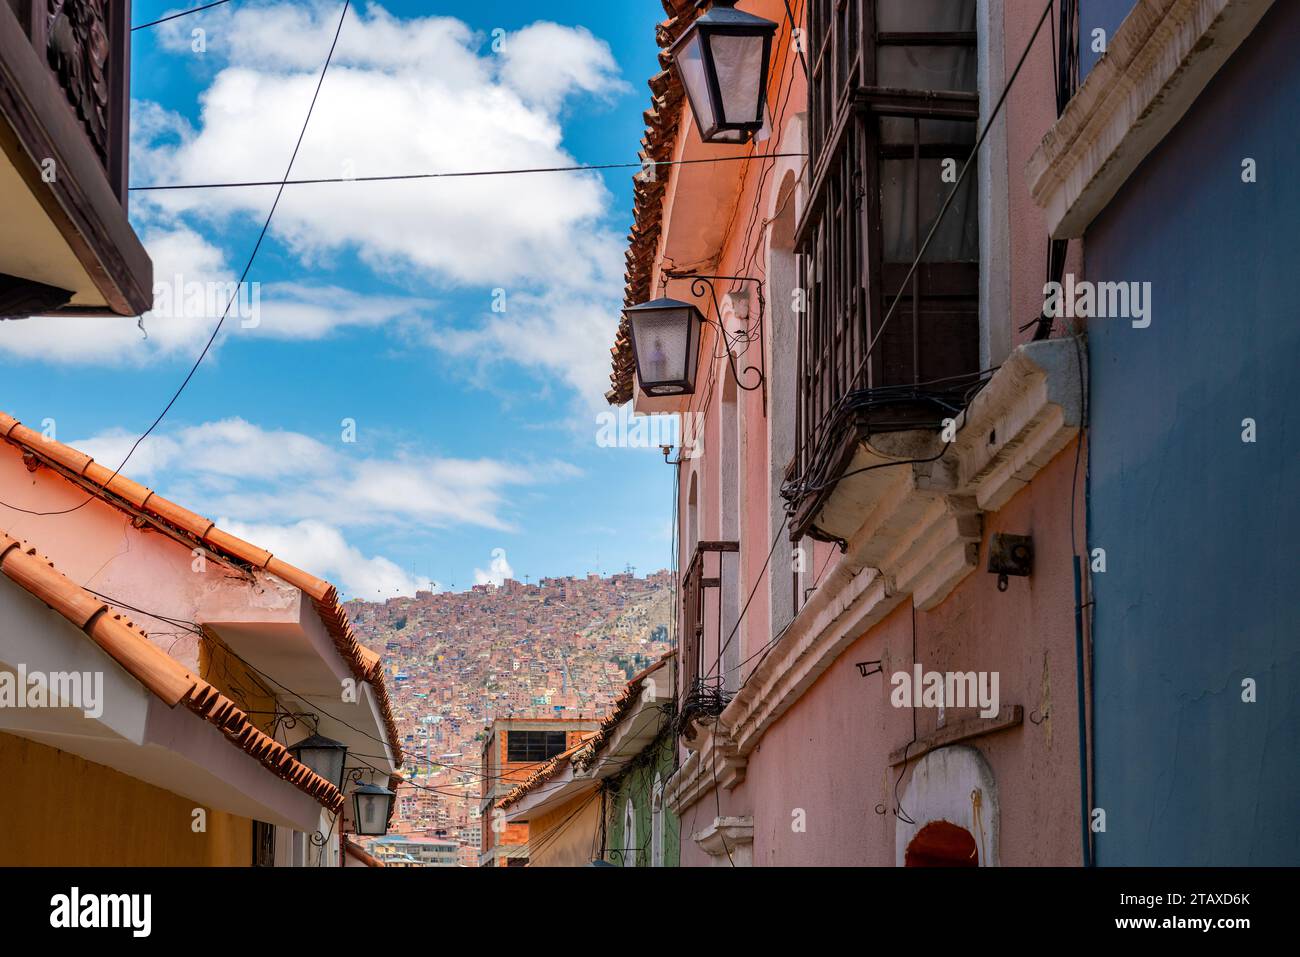 Cityscape of colonial architecture in La Paz, Bolivia. Stock Photo